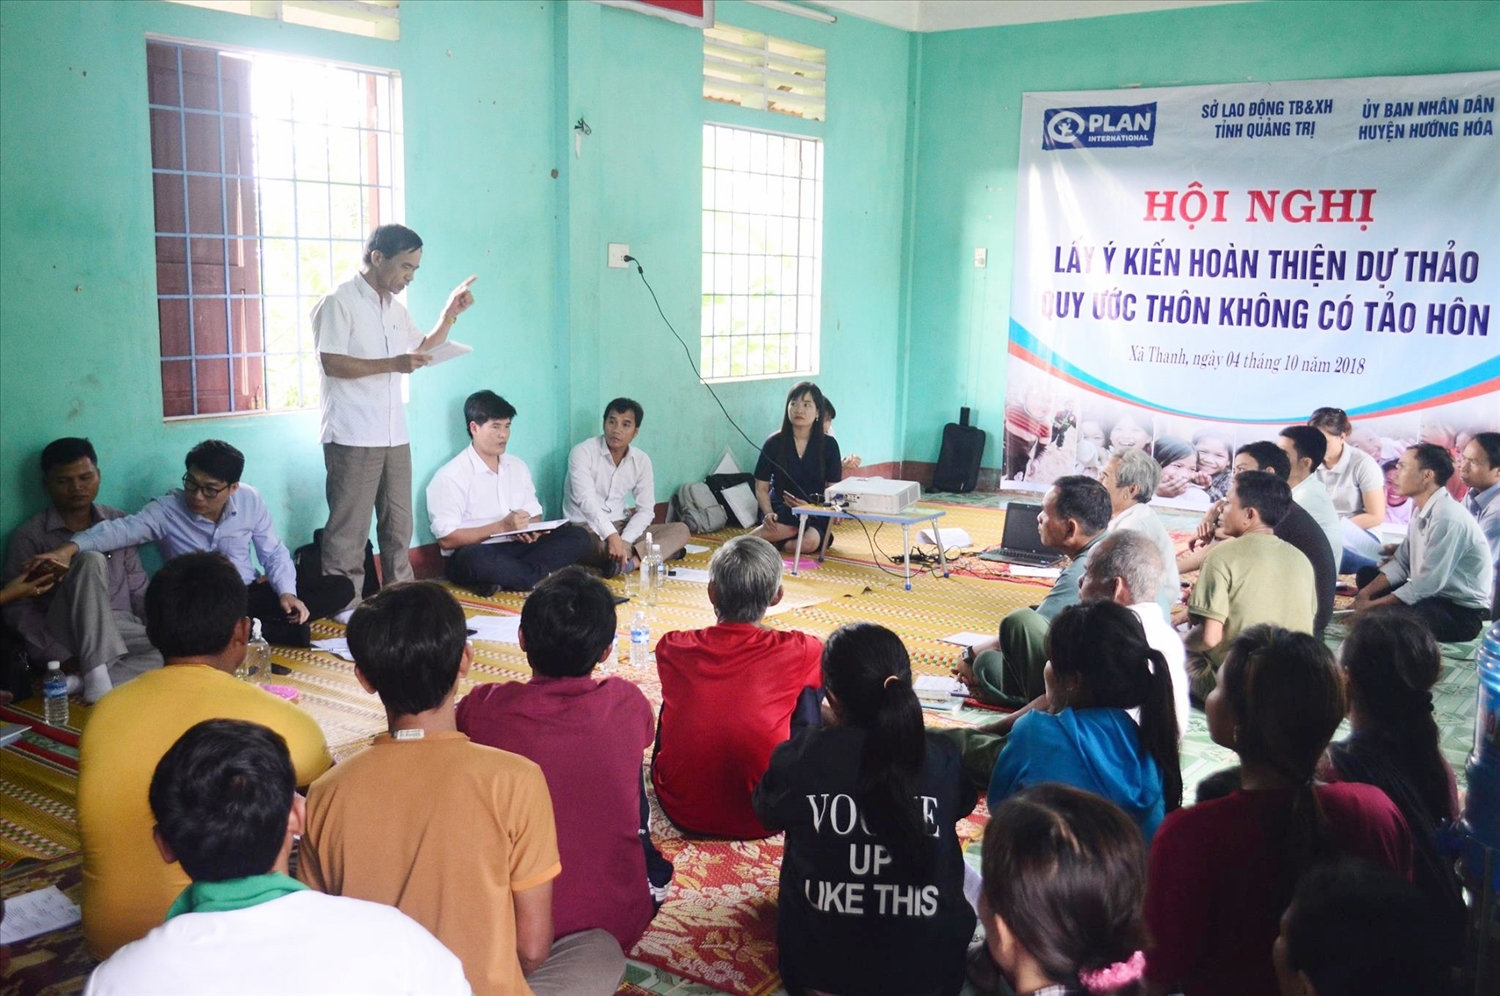  Công tác truyền thông hạn chế tảo hôn và hôn nhân cận huyết thống được triển khai tới từng thôn bản vùng đồng bào DTTS ở Quảng Trị